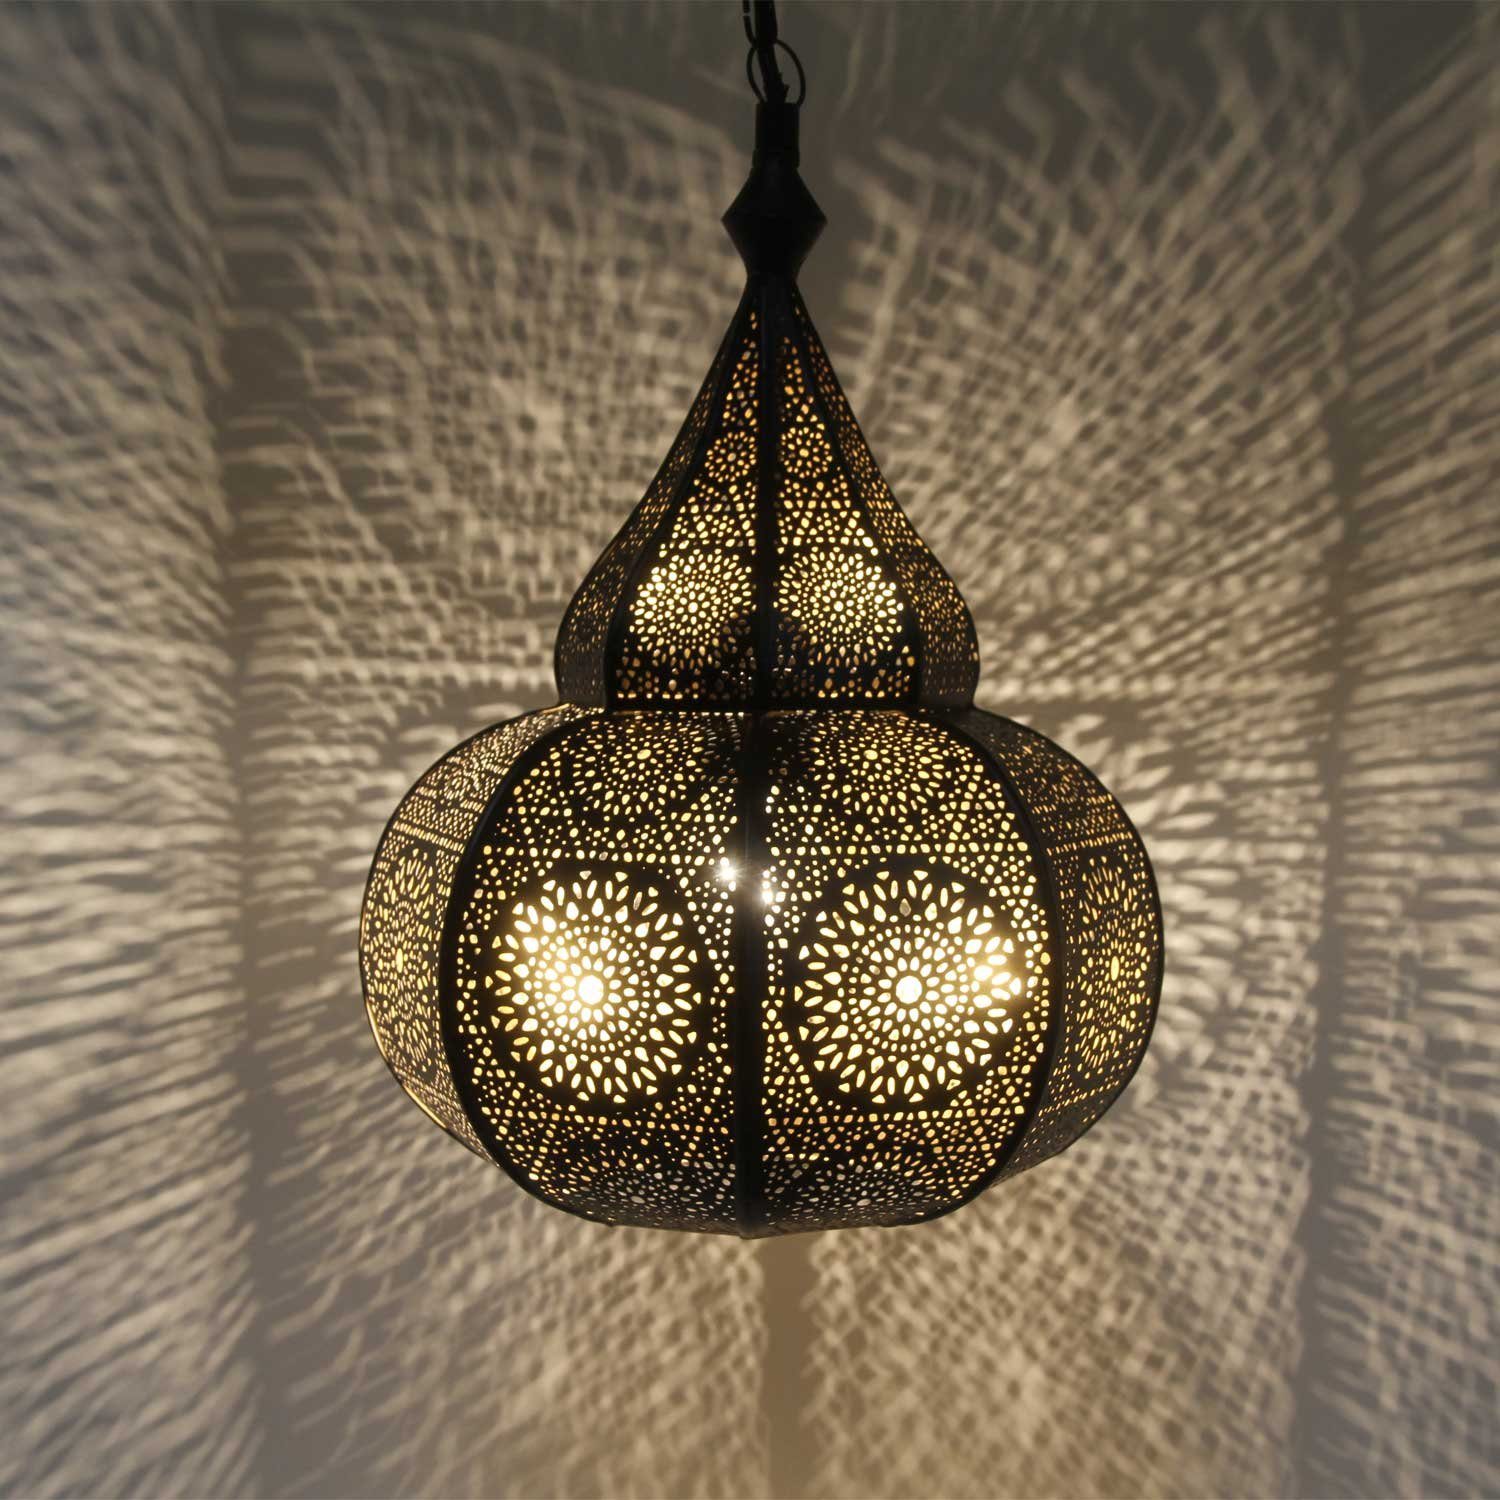 Casa Moro Deckenleuchten Orientalische Lampe Taza Schwarz Hängeleuchte mit Baldachin & Kette, ohne Leuchtmittel, Weihnachtsbeleuchtung, Pendelleuchte, LN3010 | Deckenlampen